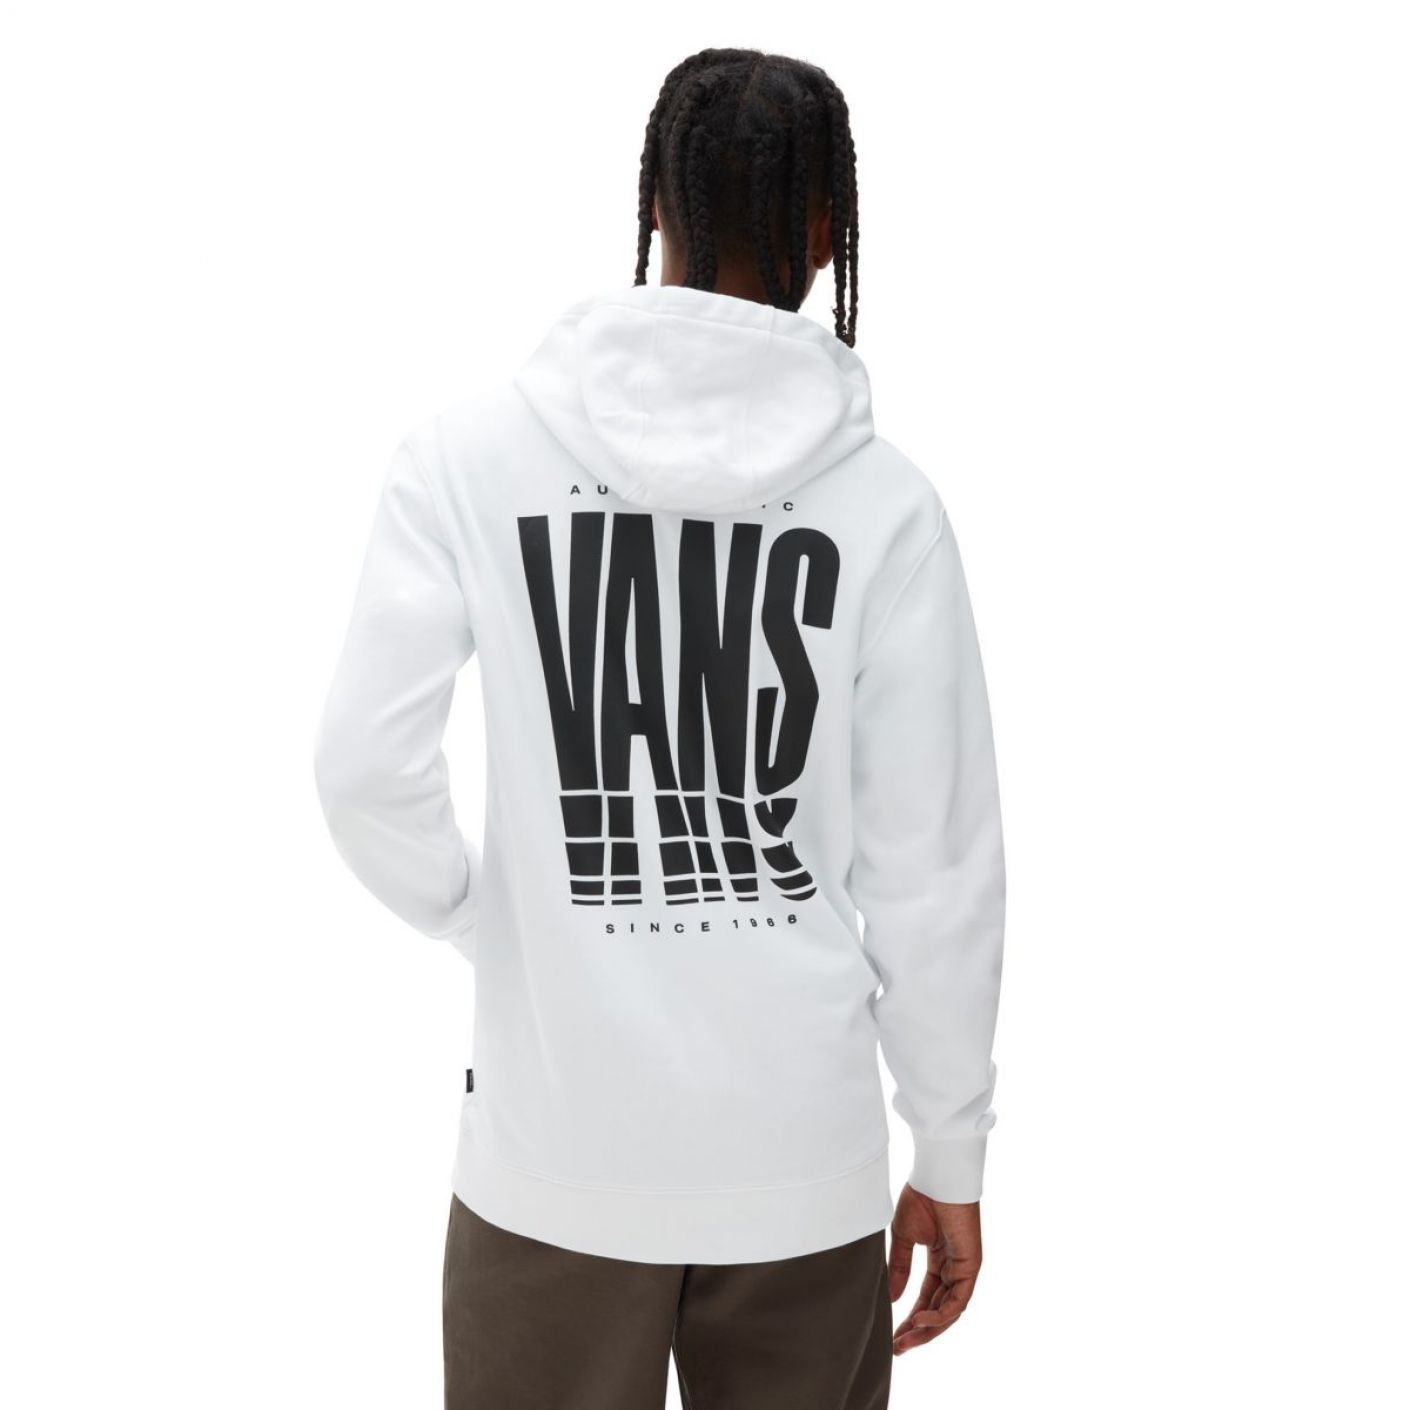 Vans Reflect Sweatshirt with White Hood